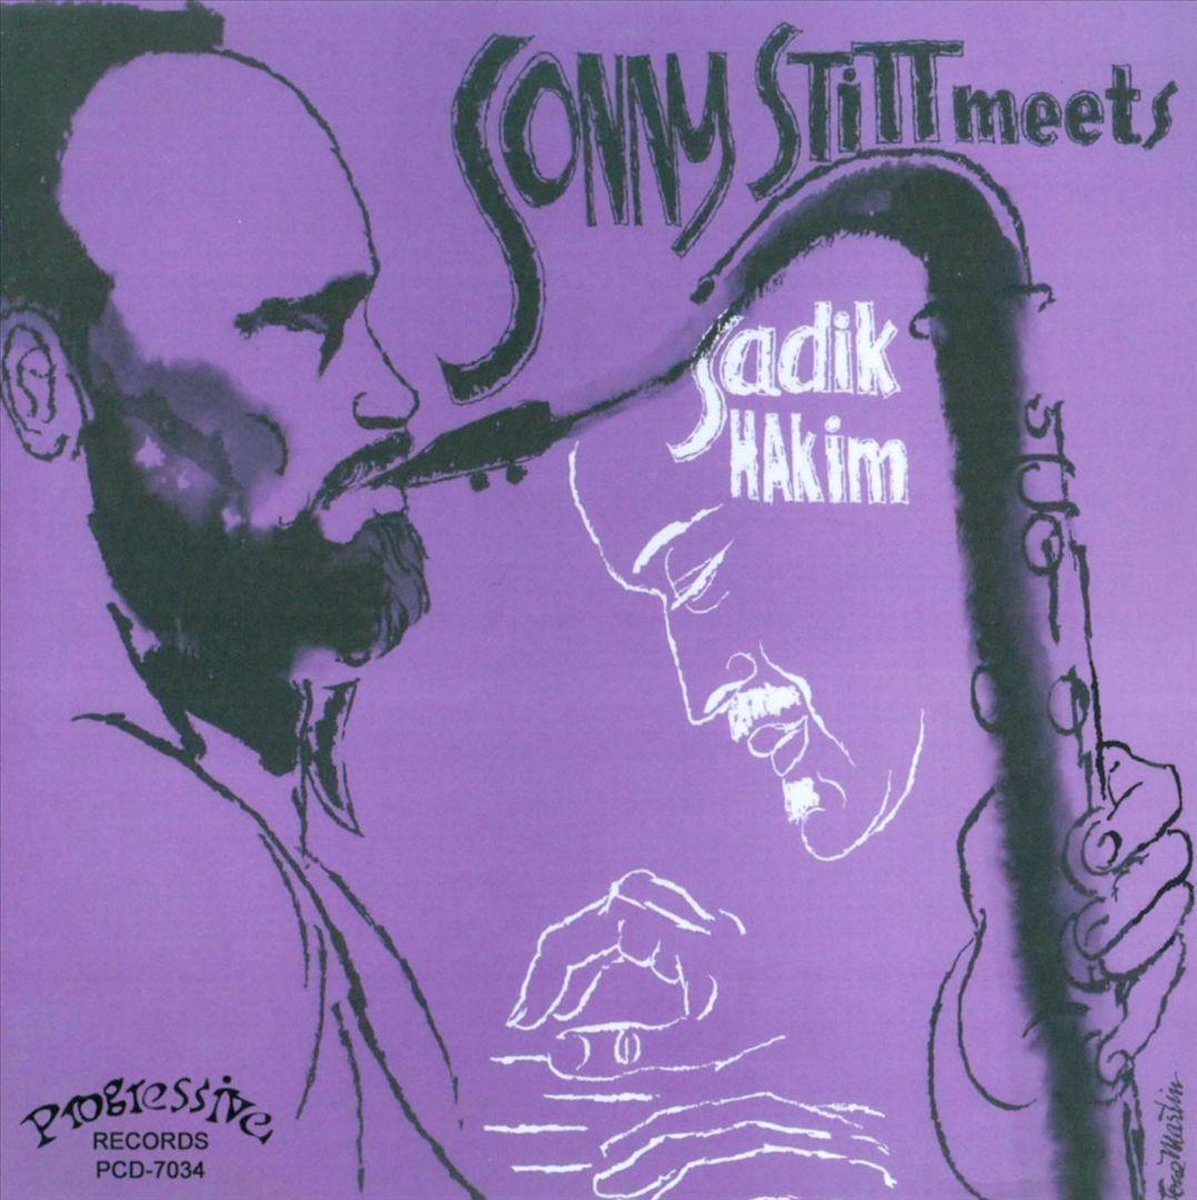 Music&Words Sonny Stitt - Sonny Stitt Meets Sadik Hakim